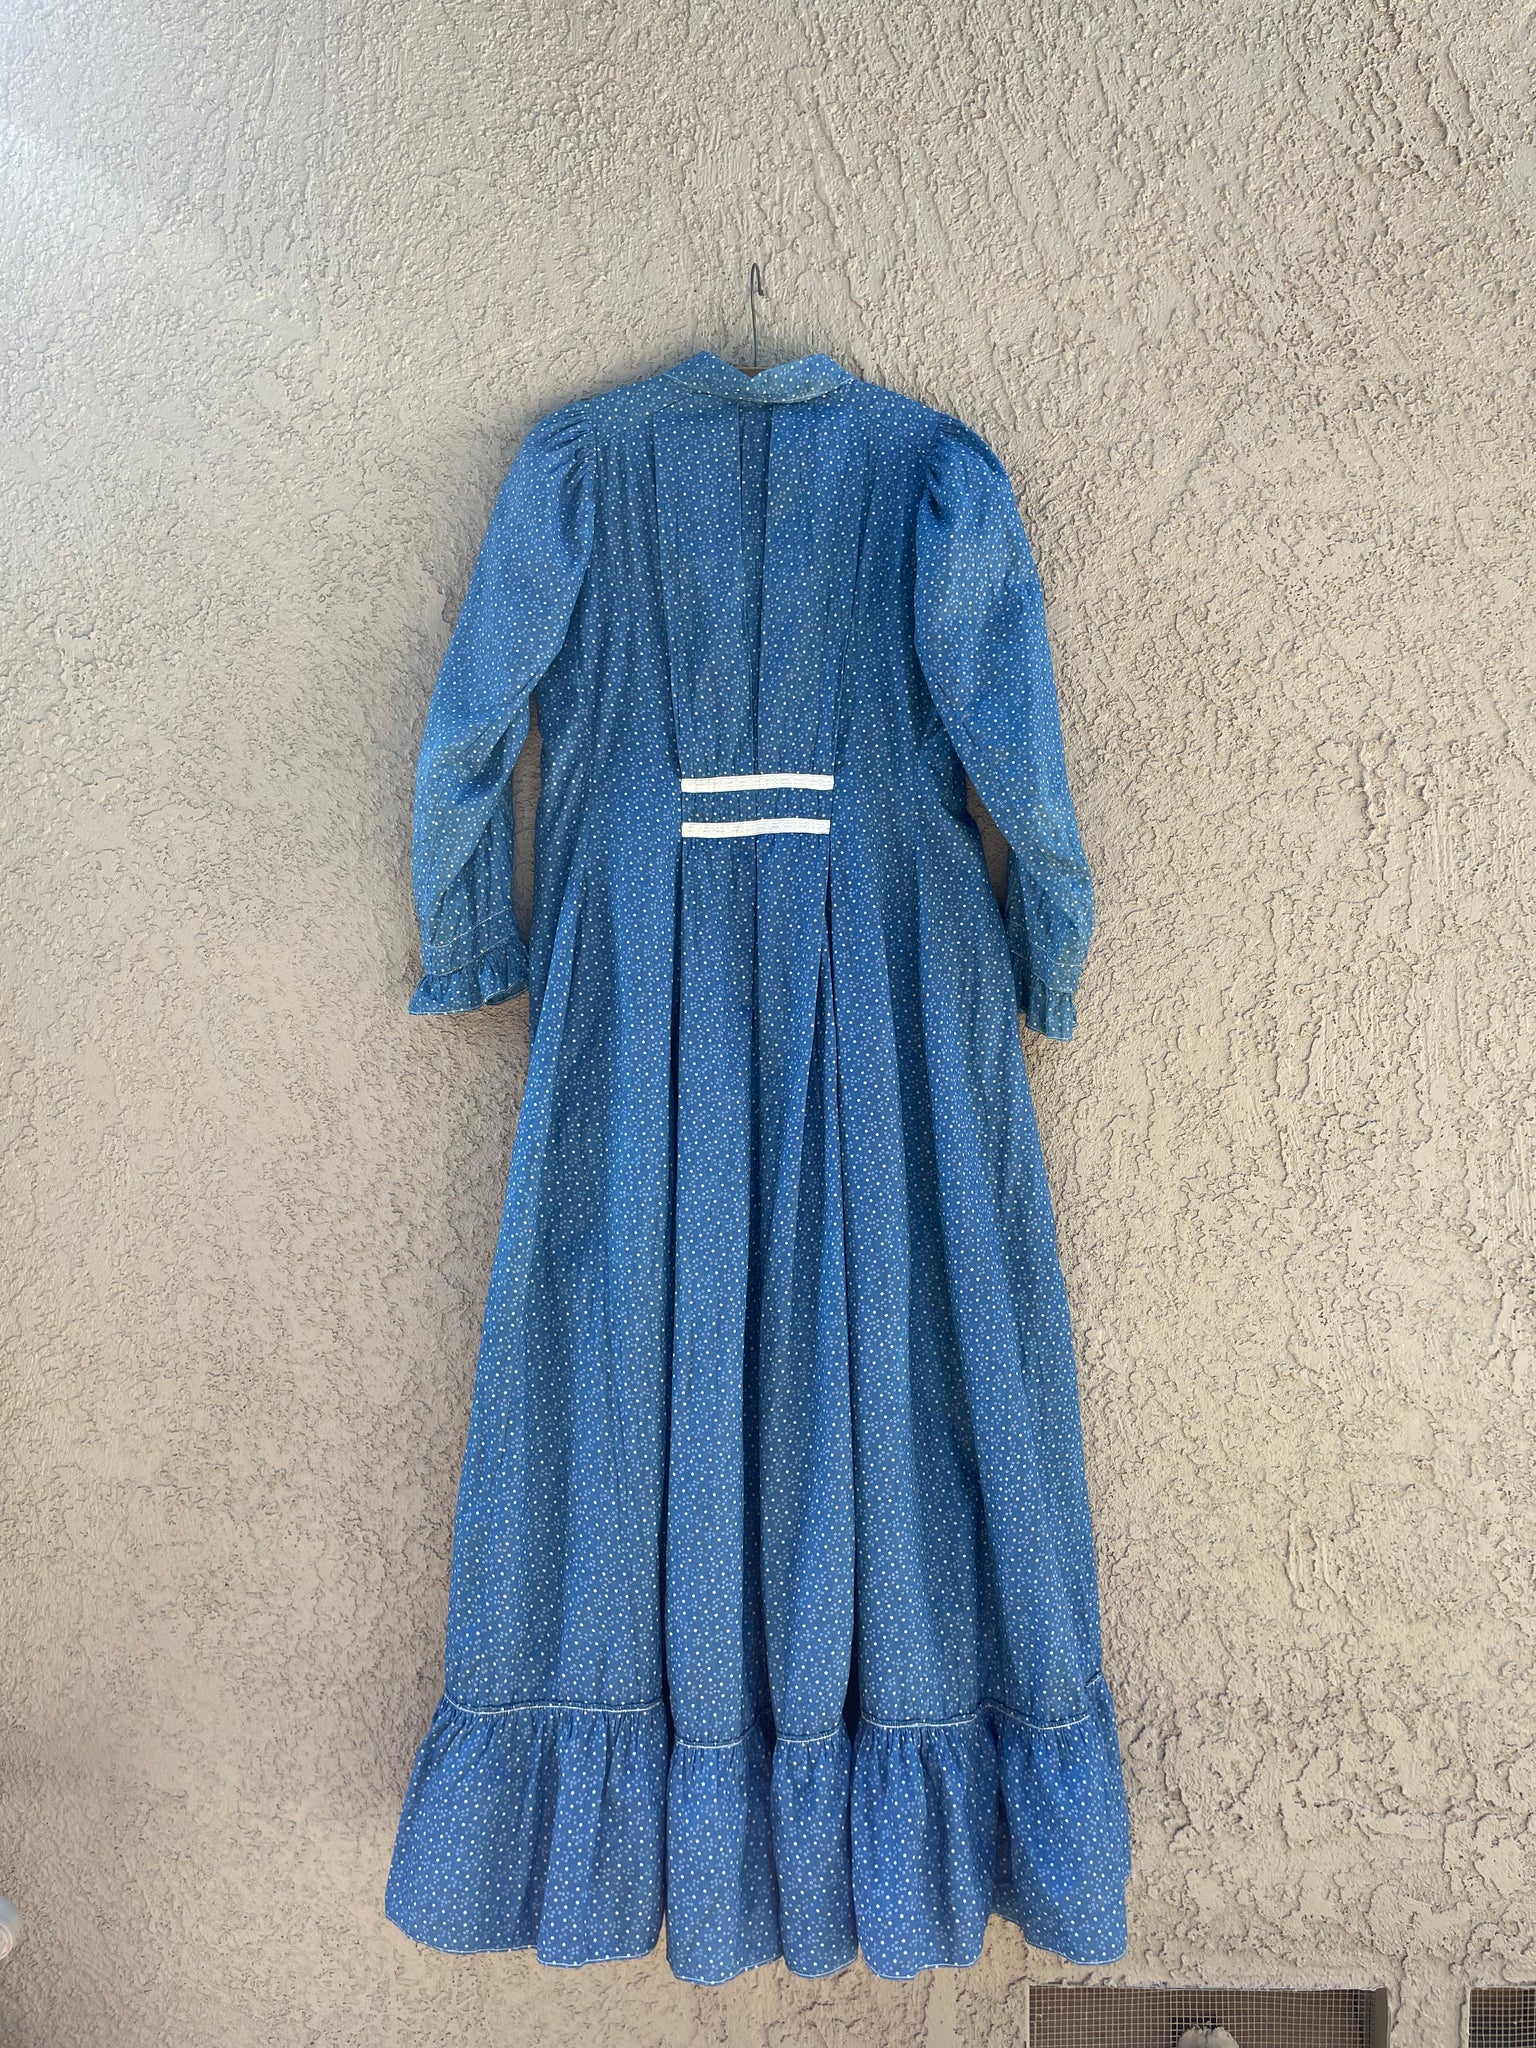 Rare 1890s-1900s Indigo Calico Wrapper Prairie Dress